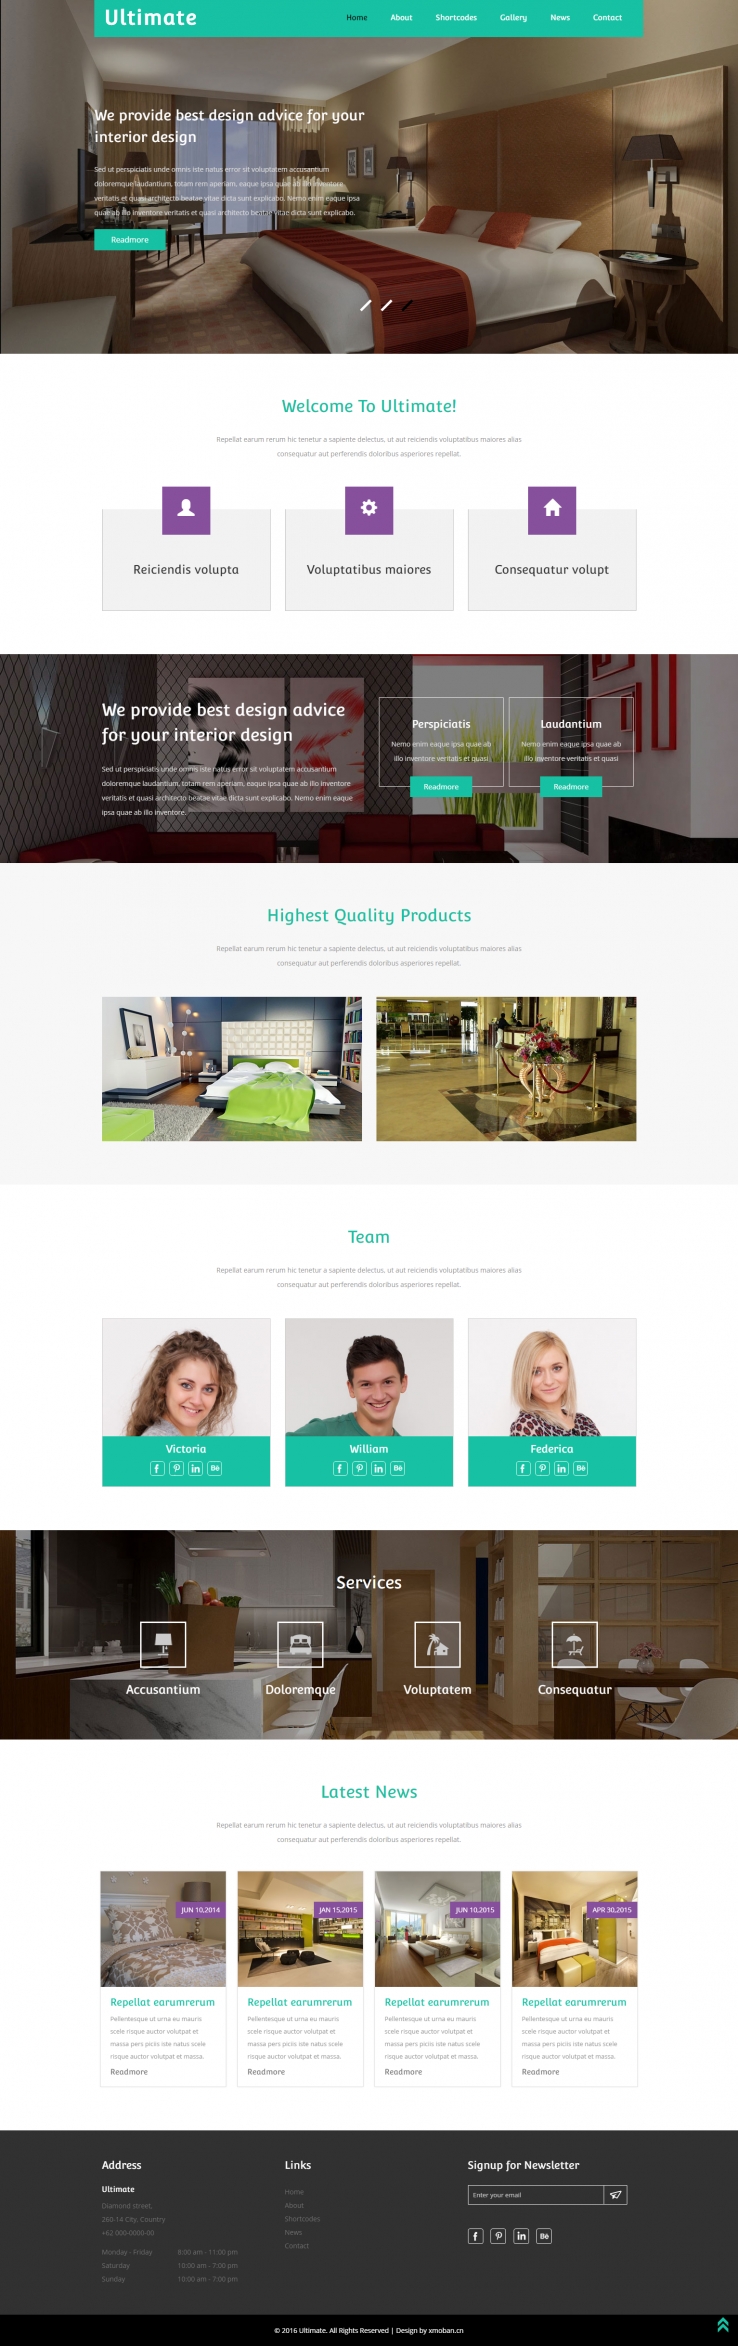 绿色简洁风格的室内设计企业网站源码下载